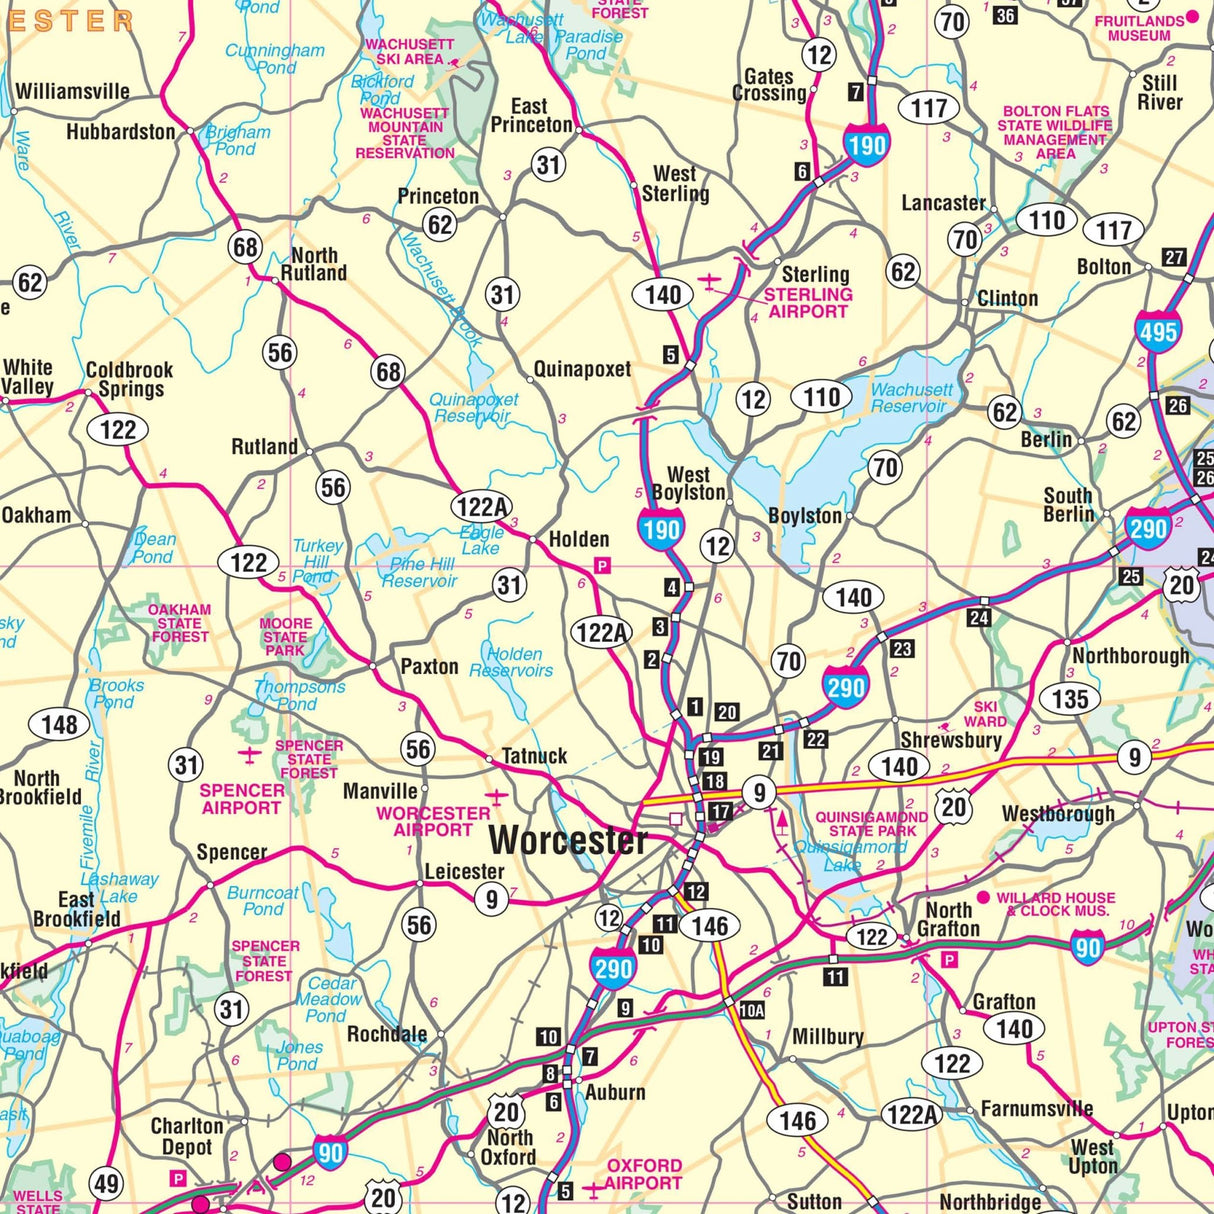 Massachusetts State Wall Map - KA-S-MA-WALL-PAPER - Ultimate Globes